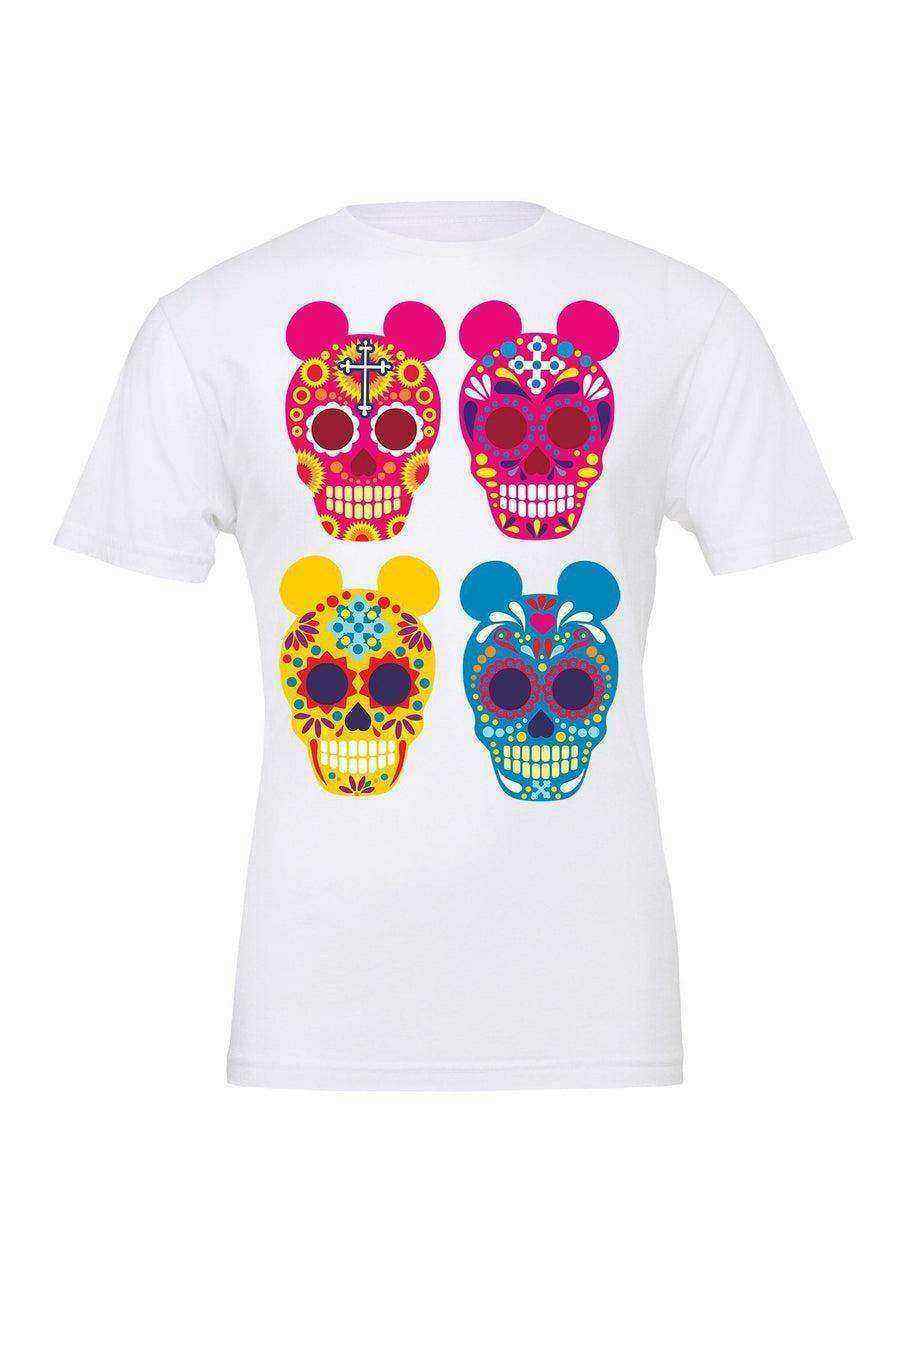 Sugar Skull Mickey Shirt | Coco Shirt - Dylan's Tees